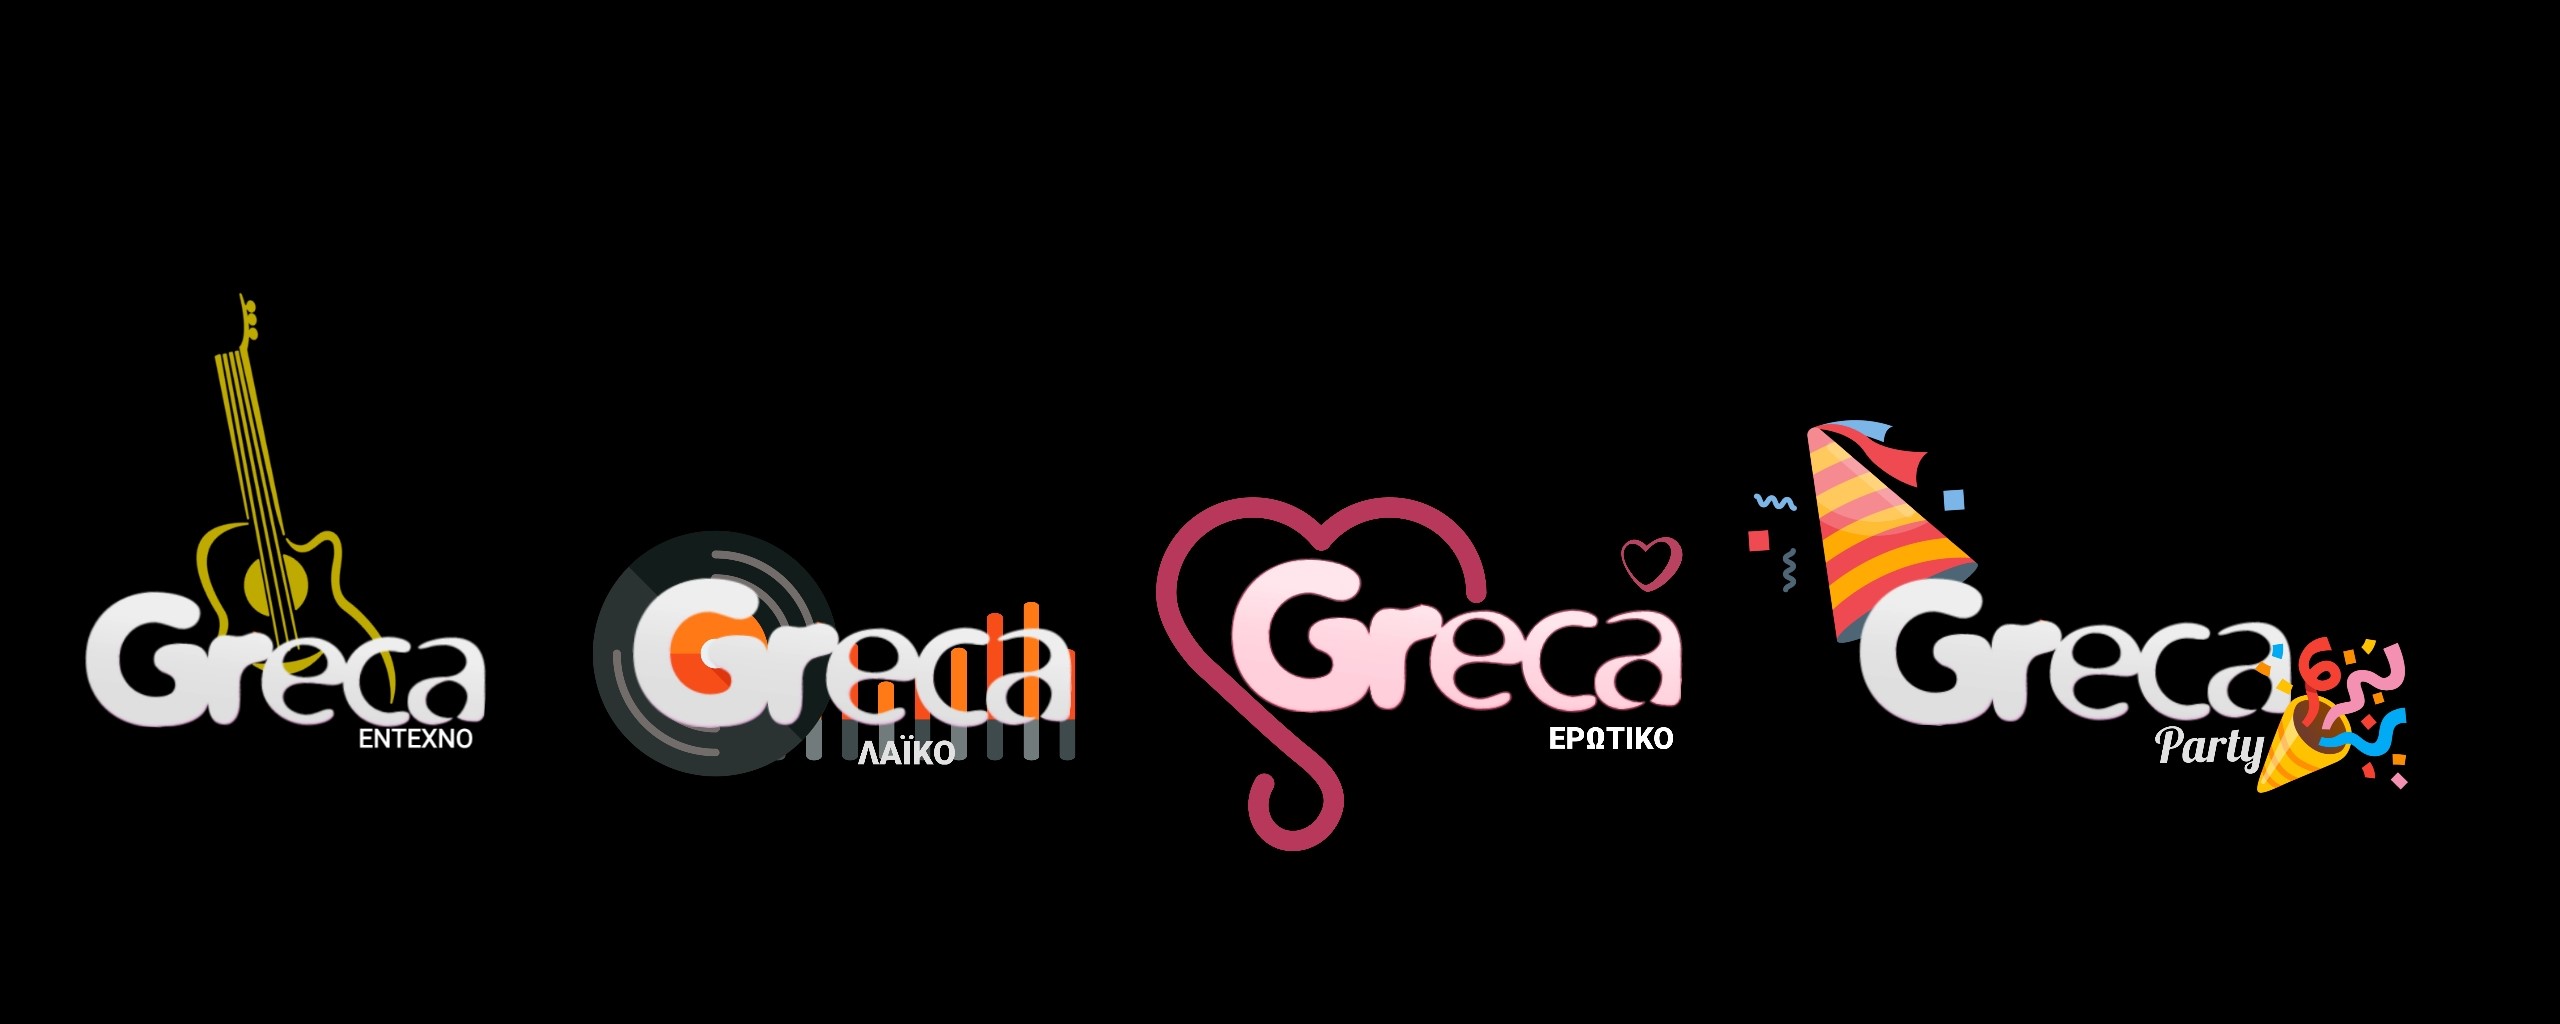 4 Νέα Greca Radios..Το Μουσικό Ταξίδι Συνεχίζεται..